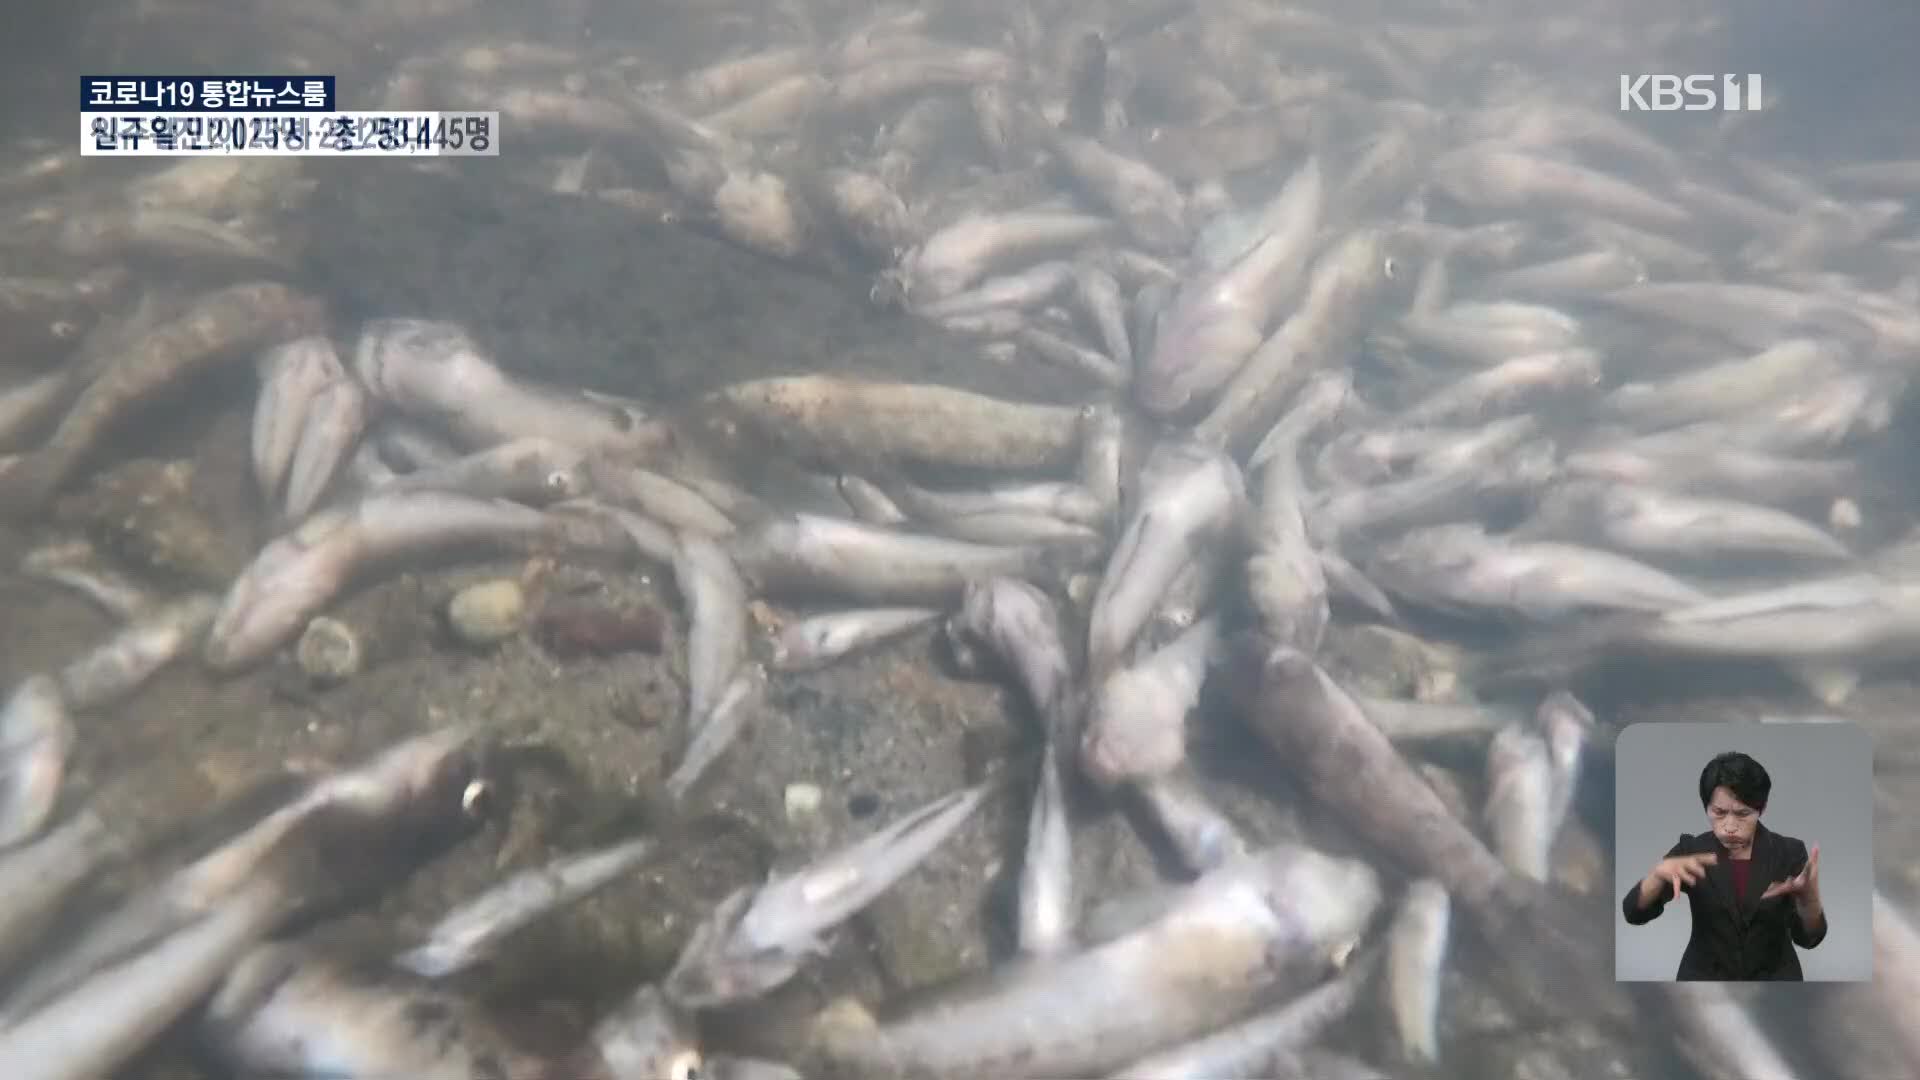 스페인 휴양지 해변 오염으로 물고기 떼죽음